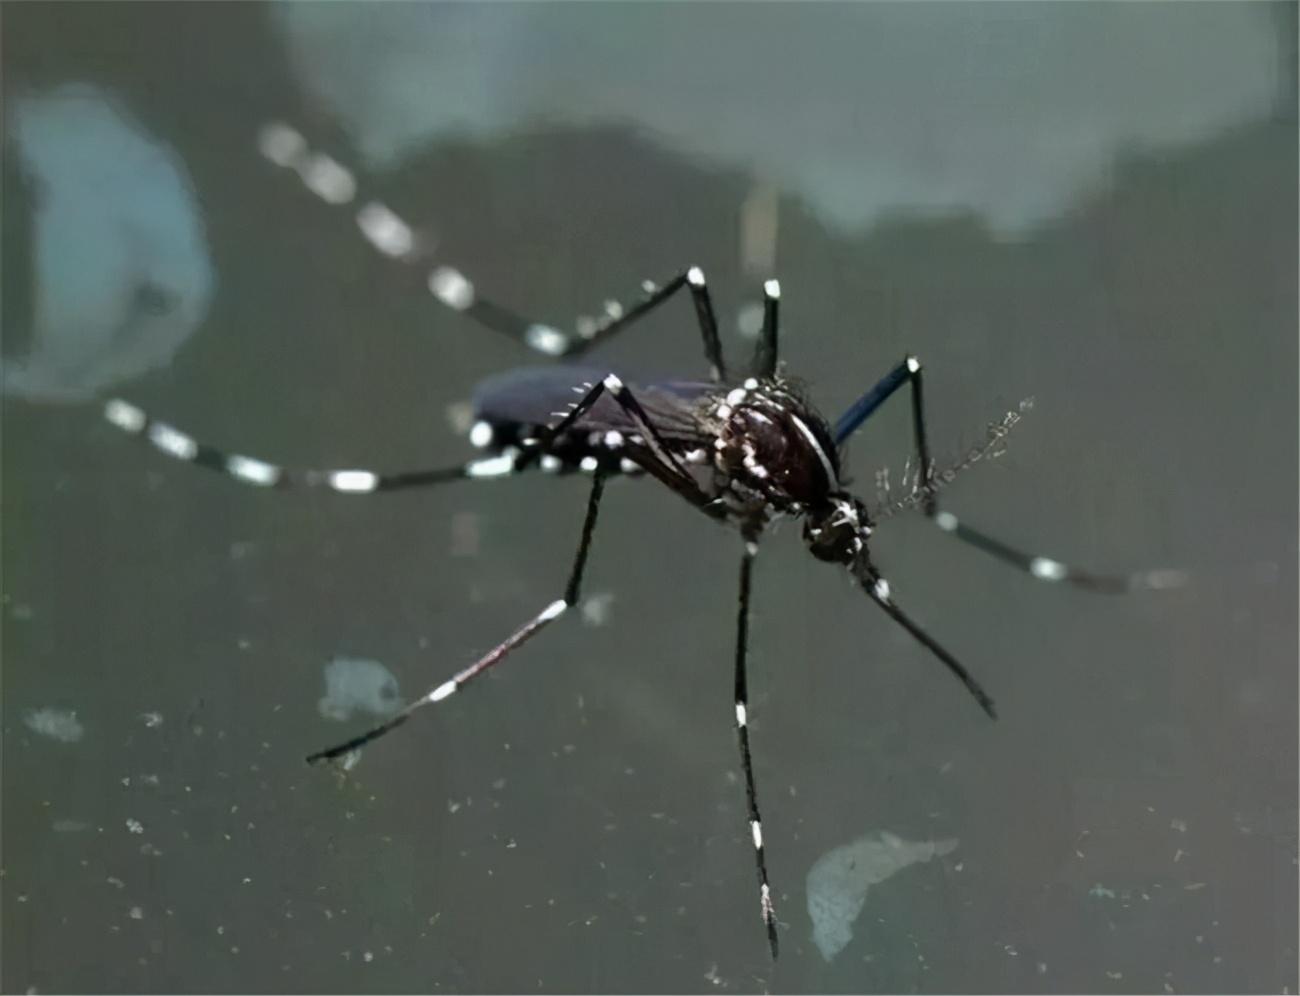 蚊子及其种类识别 - 知乎